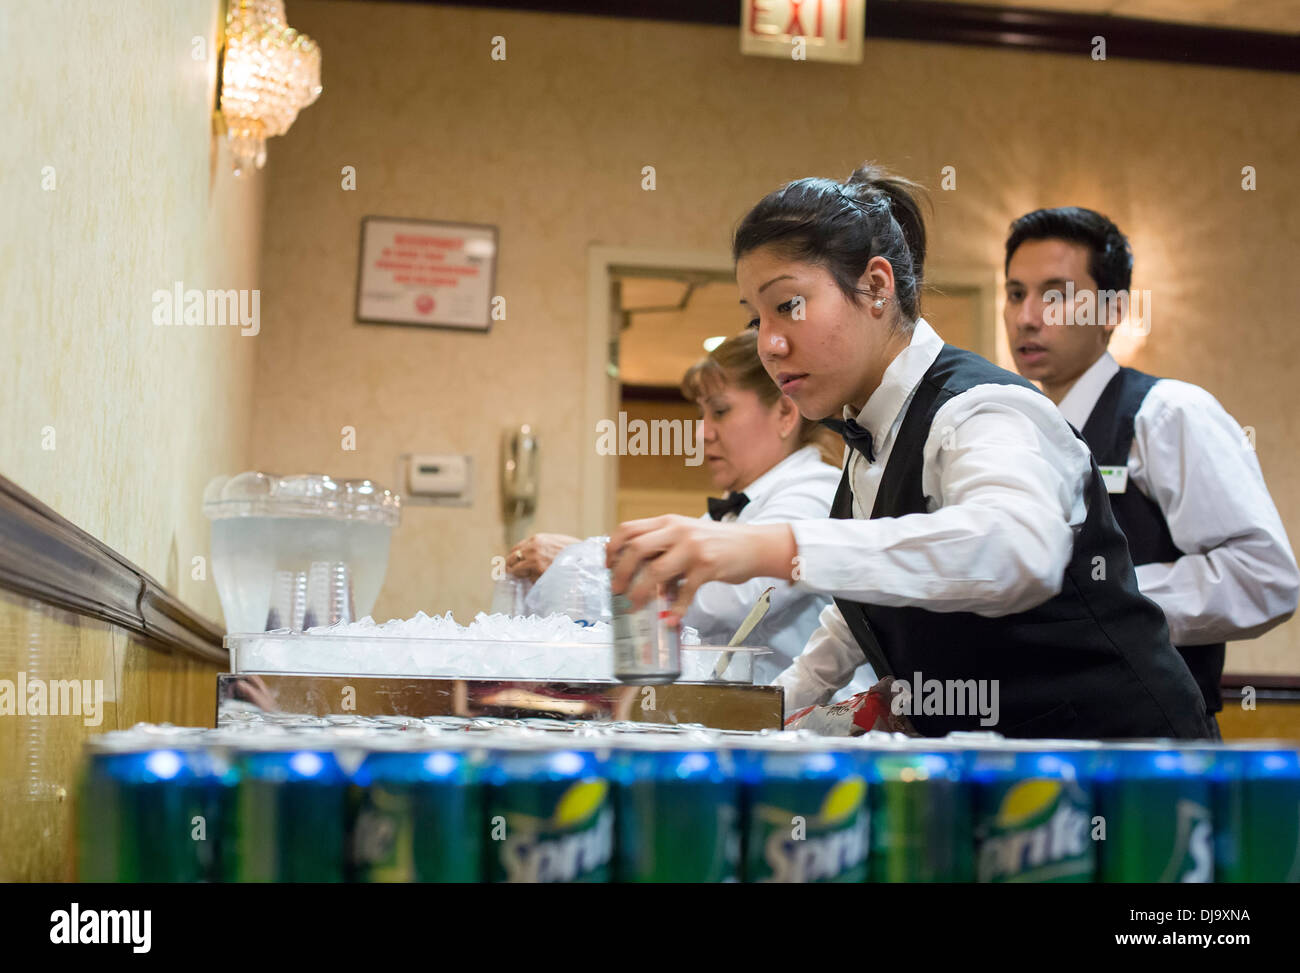 Chicago, Illinois - travailleurs de l'hôtel préparer des boissons pour un banquet à l'hôtel Holiday Inn O'Hare. Banque D'Images